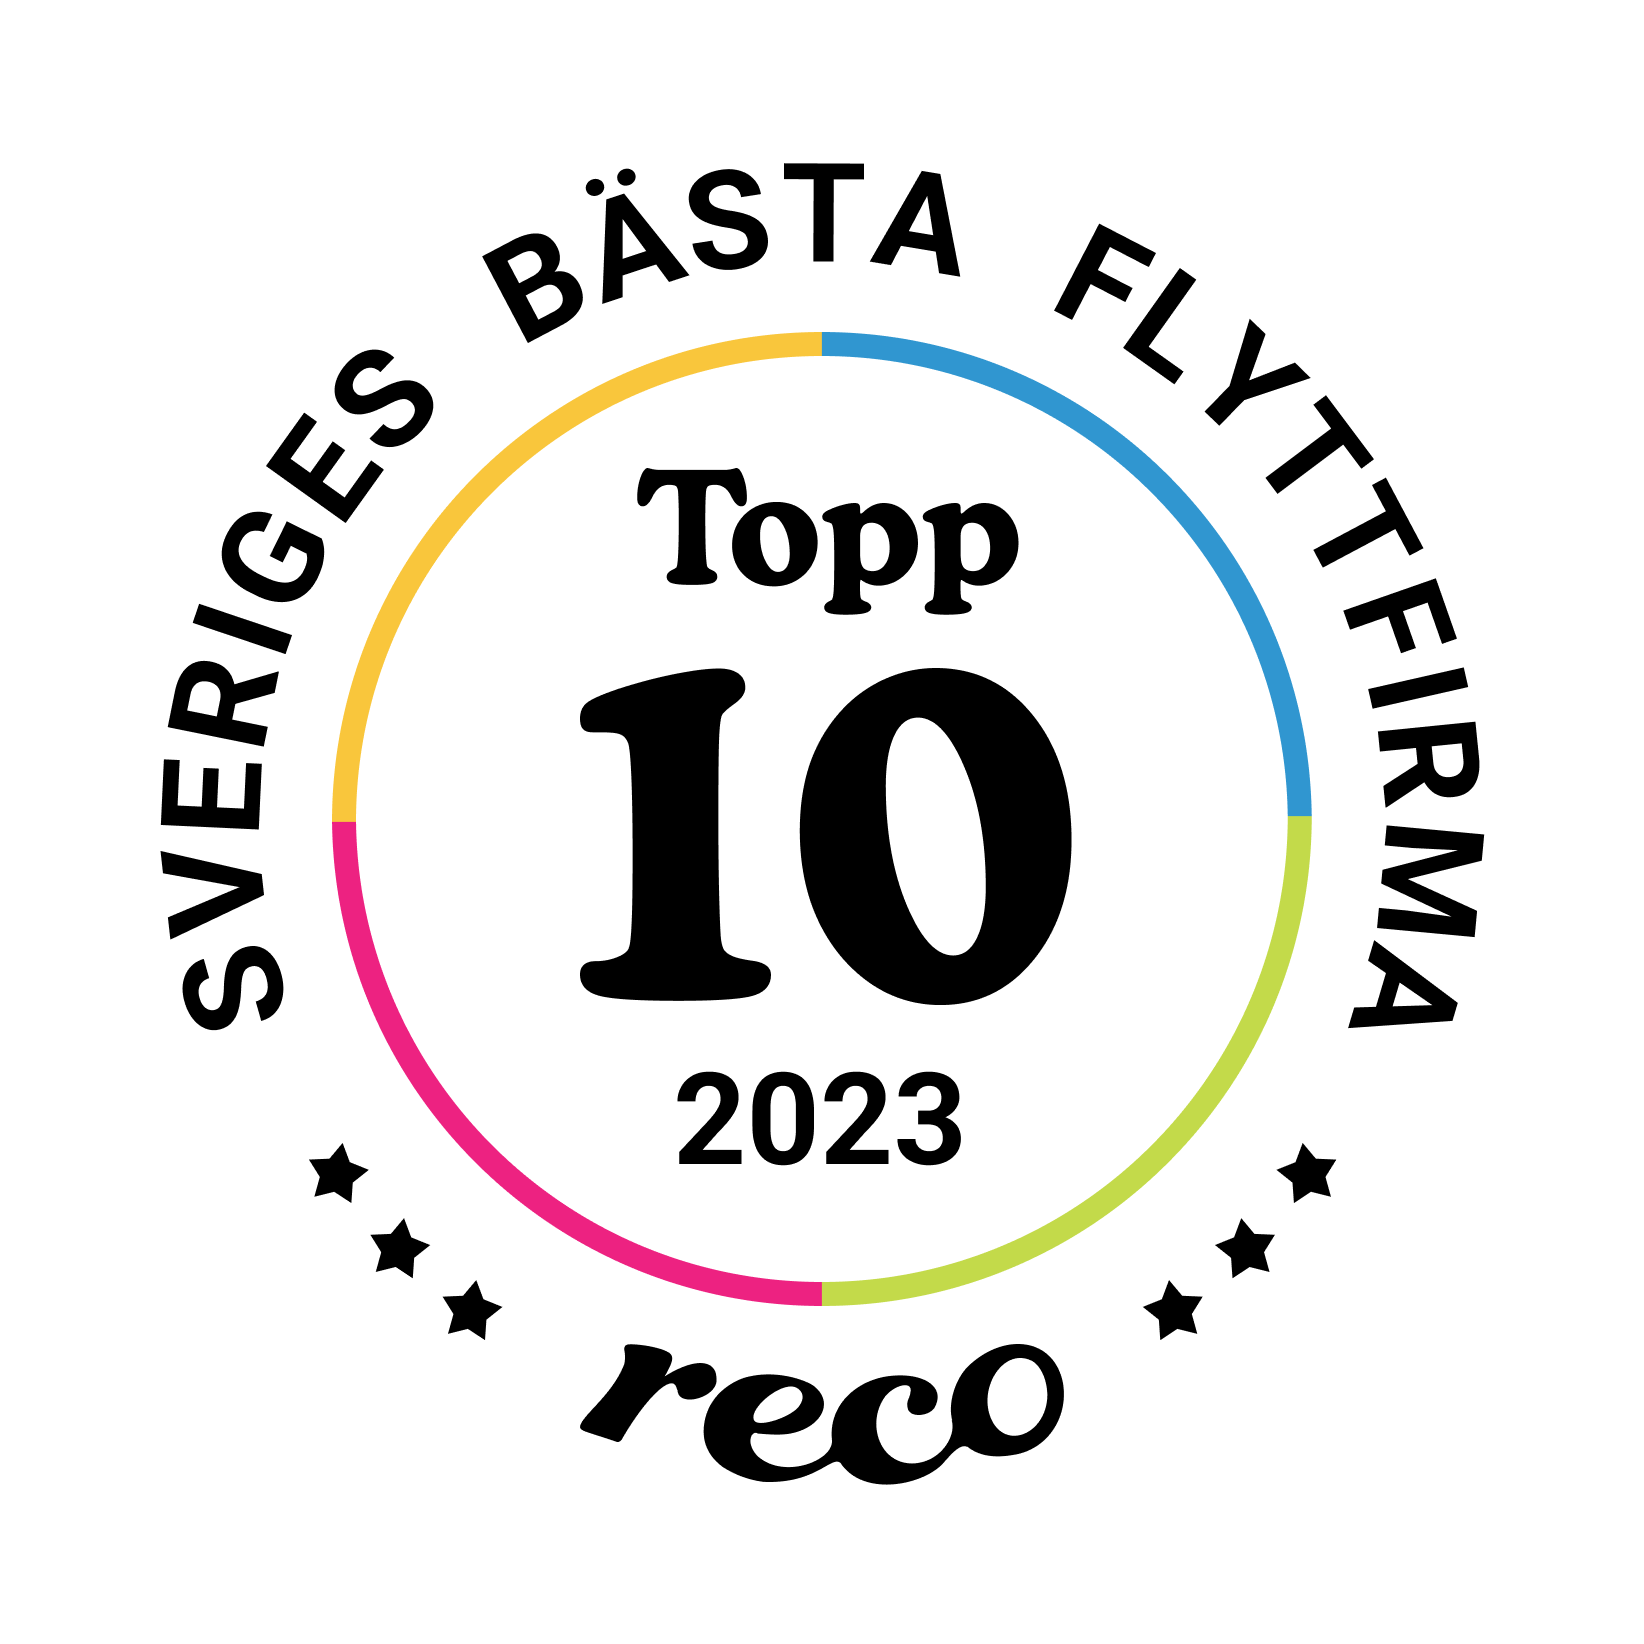 Bagde - Best in Sweden - Flyttfirma - Top Ten@2x